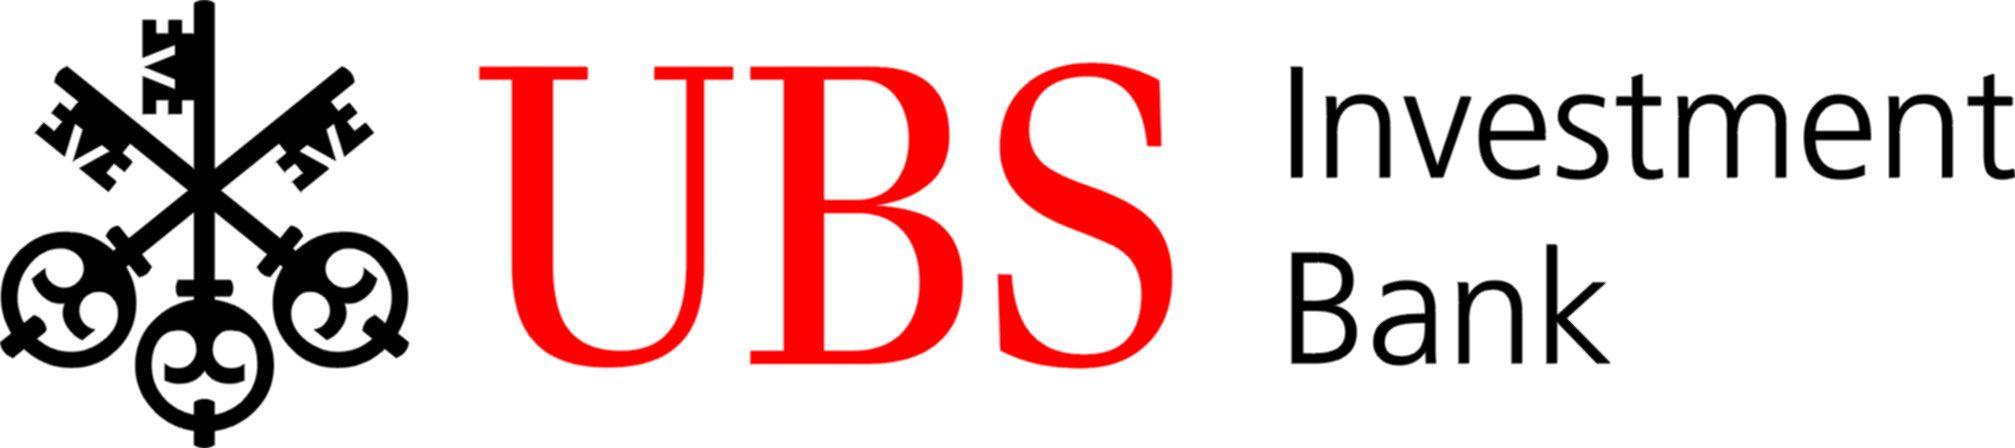 UBS Logo - Giuseppe Nuti | Fixed Income Leaders USA Summit 2019